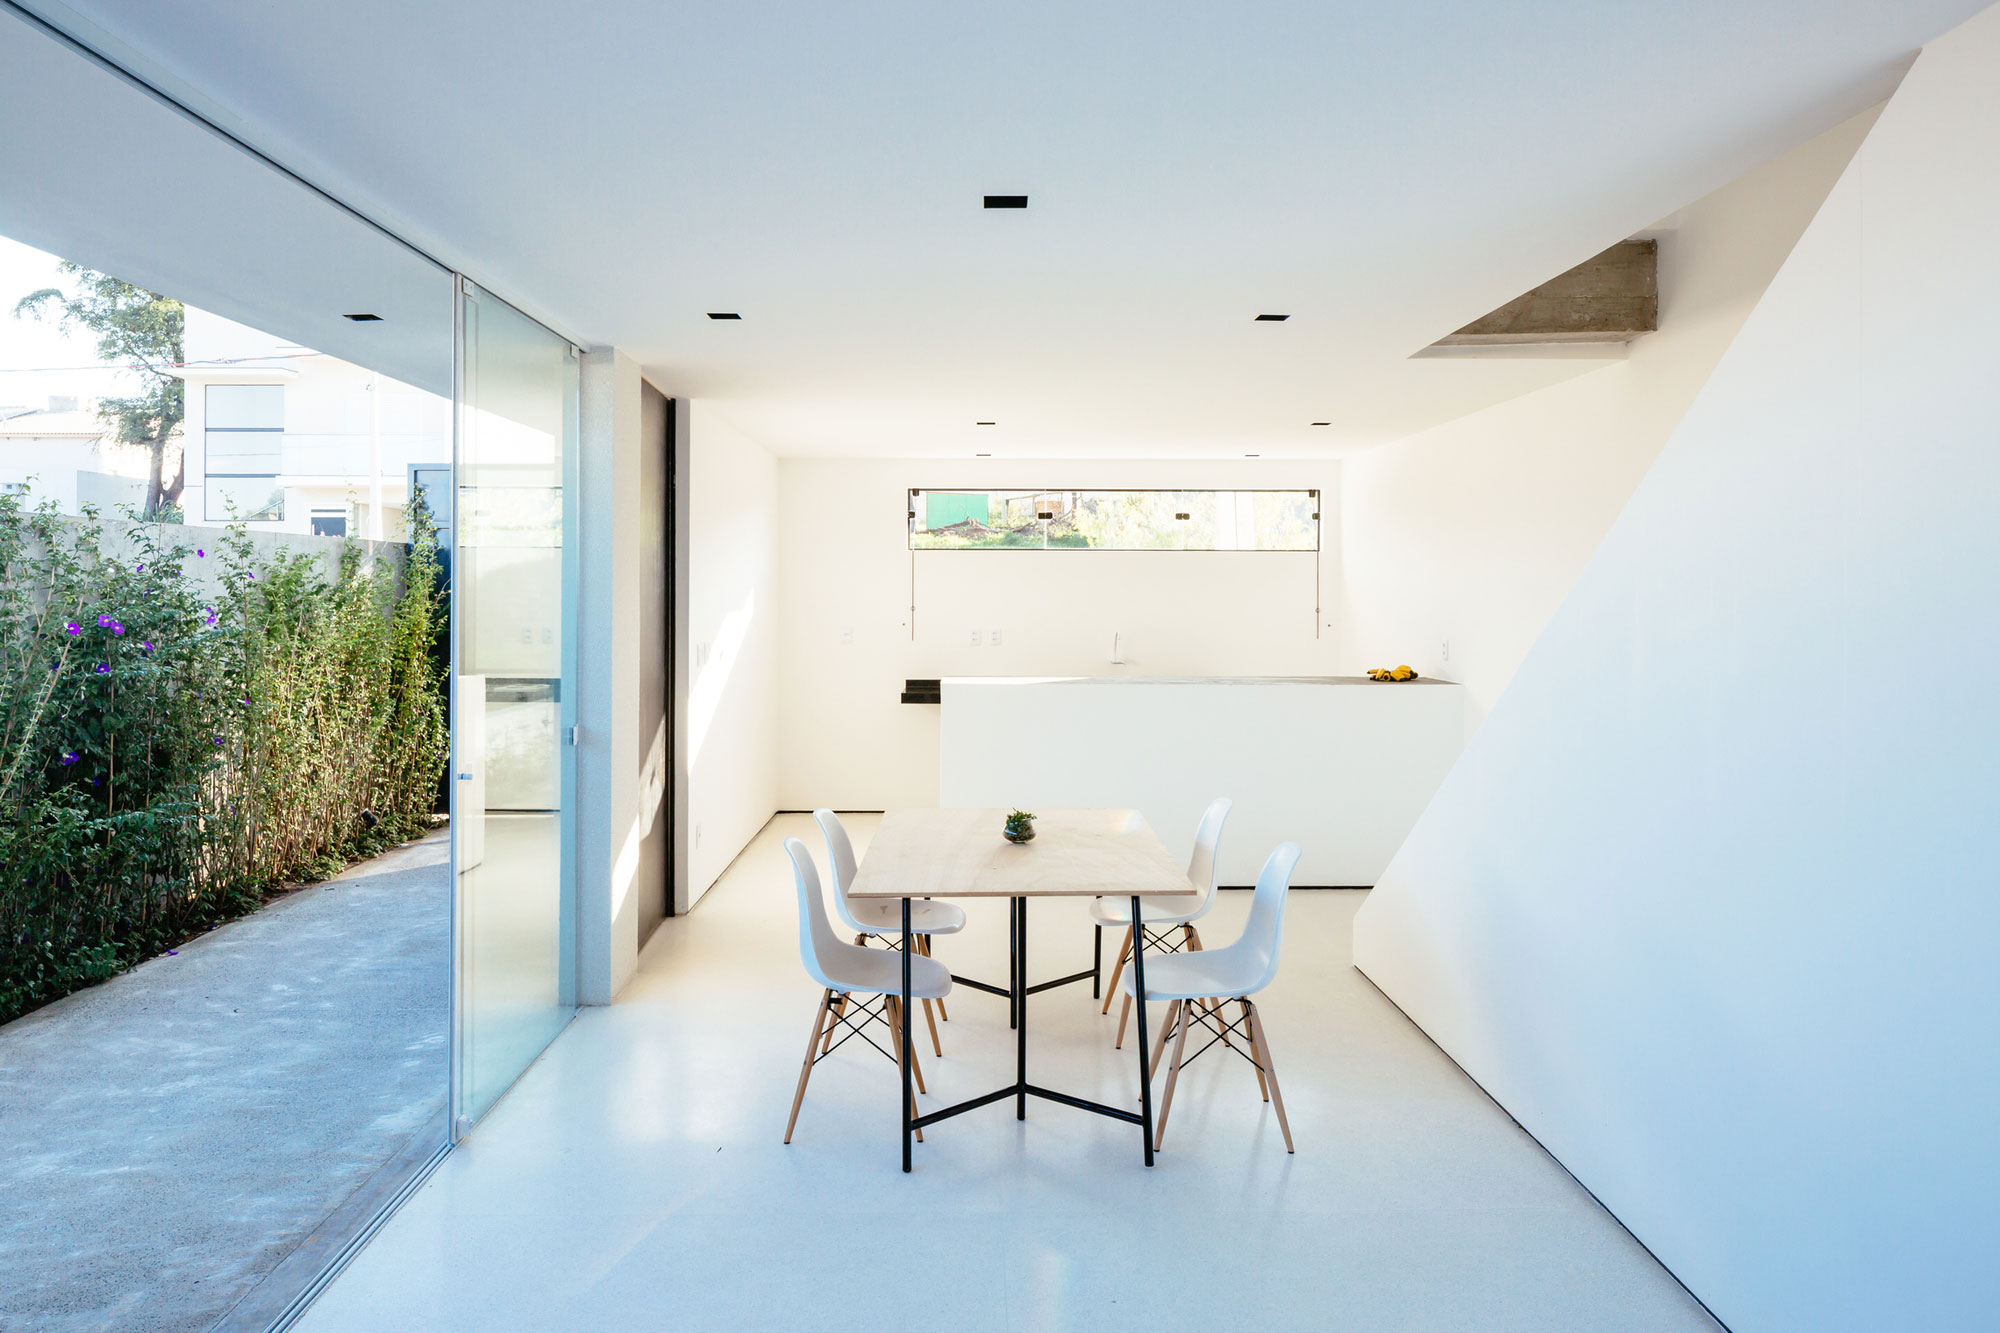 Лаконичный дизайн белоснежного минималистского дома со стеклянными стенами